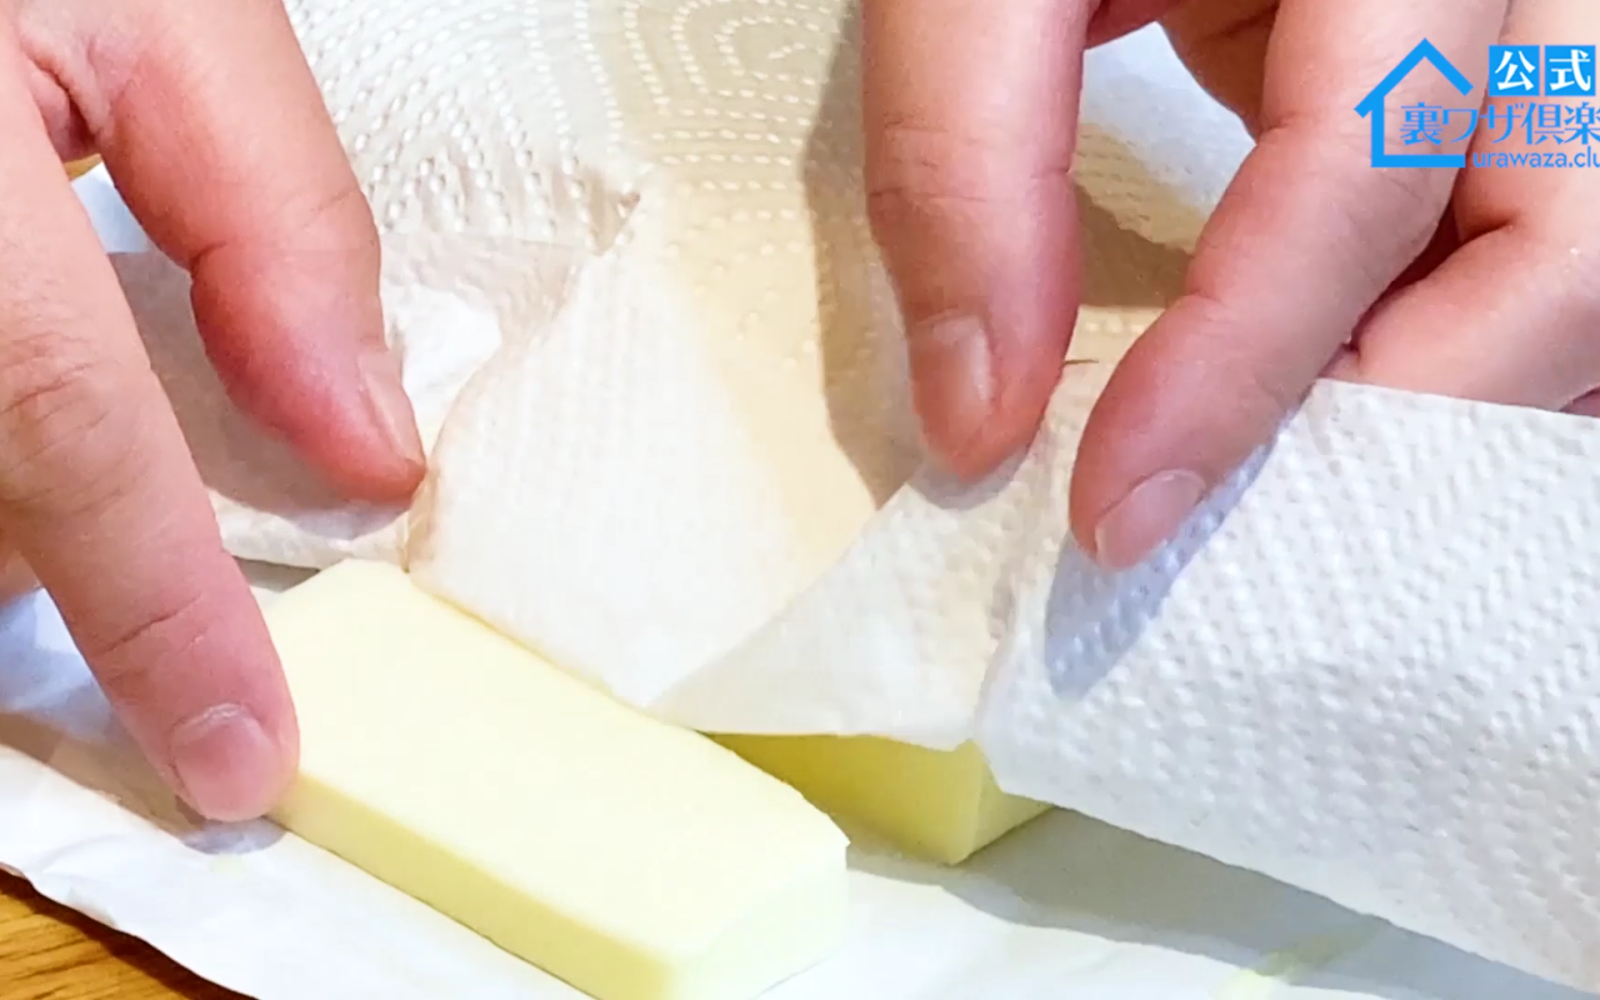 クッキングペーパーと包丁でバターを切る女性